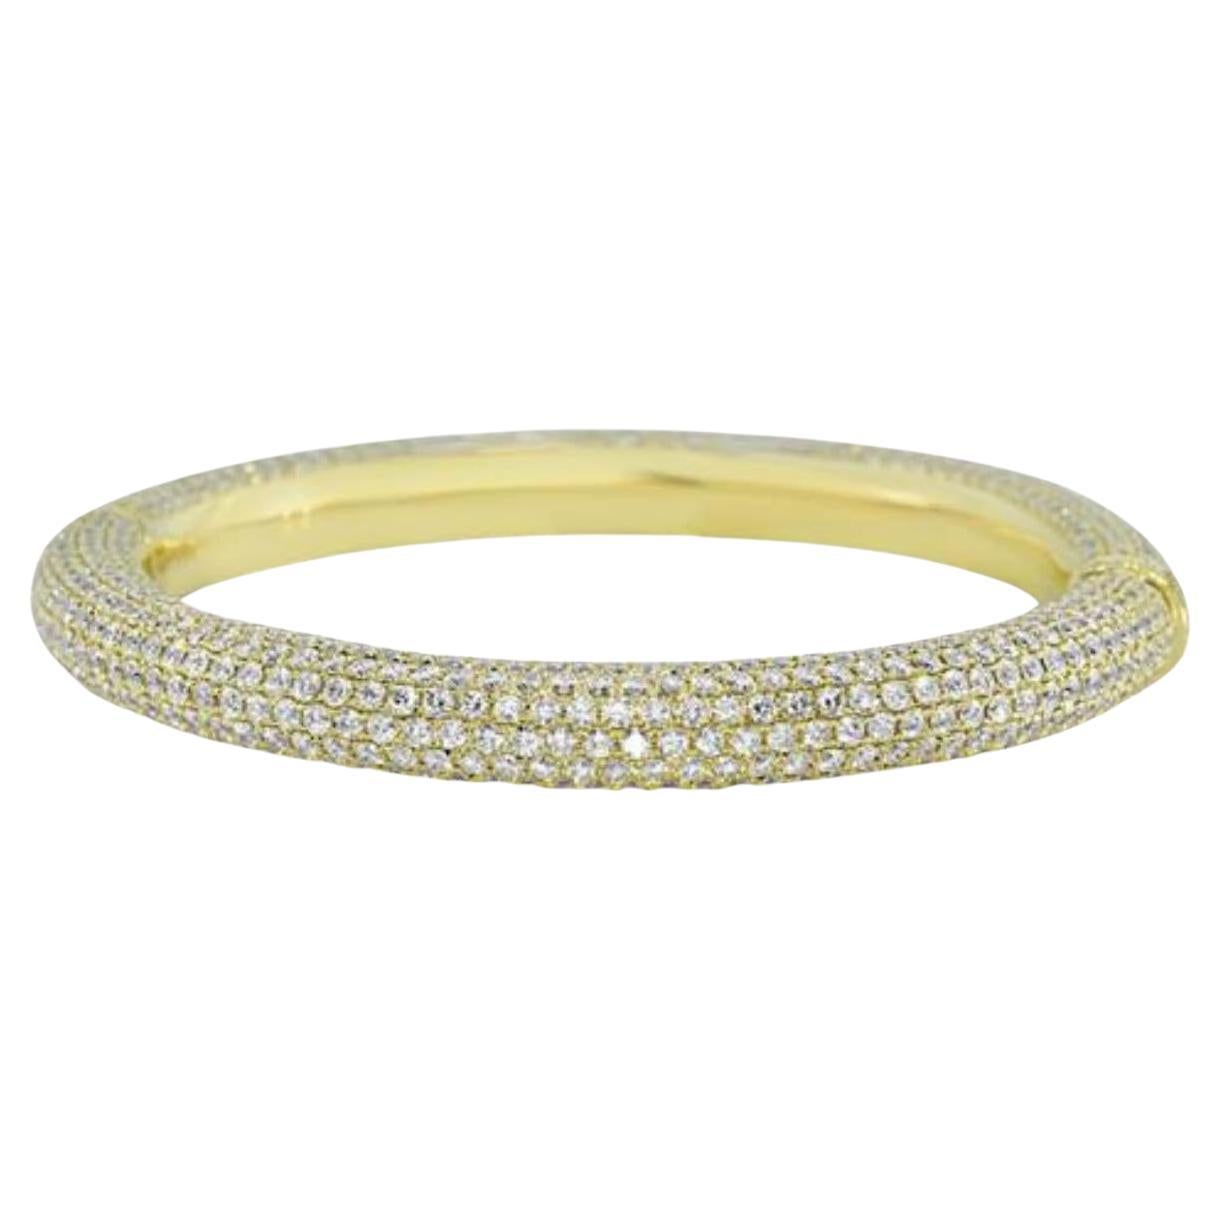 Jay Feder 18k Yellow Gold Diamond Pave Bangle Bracelet